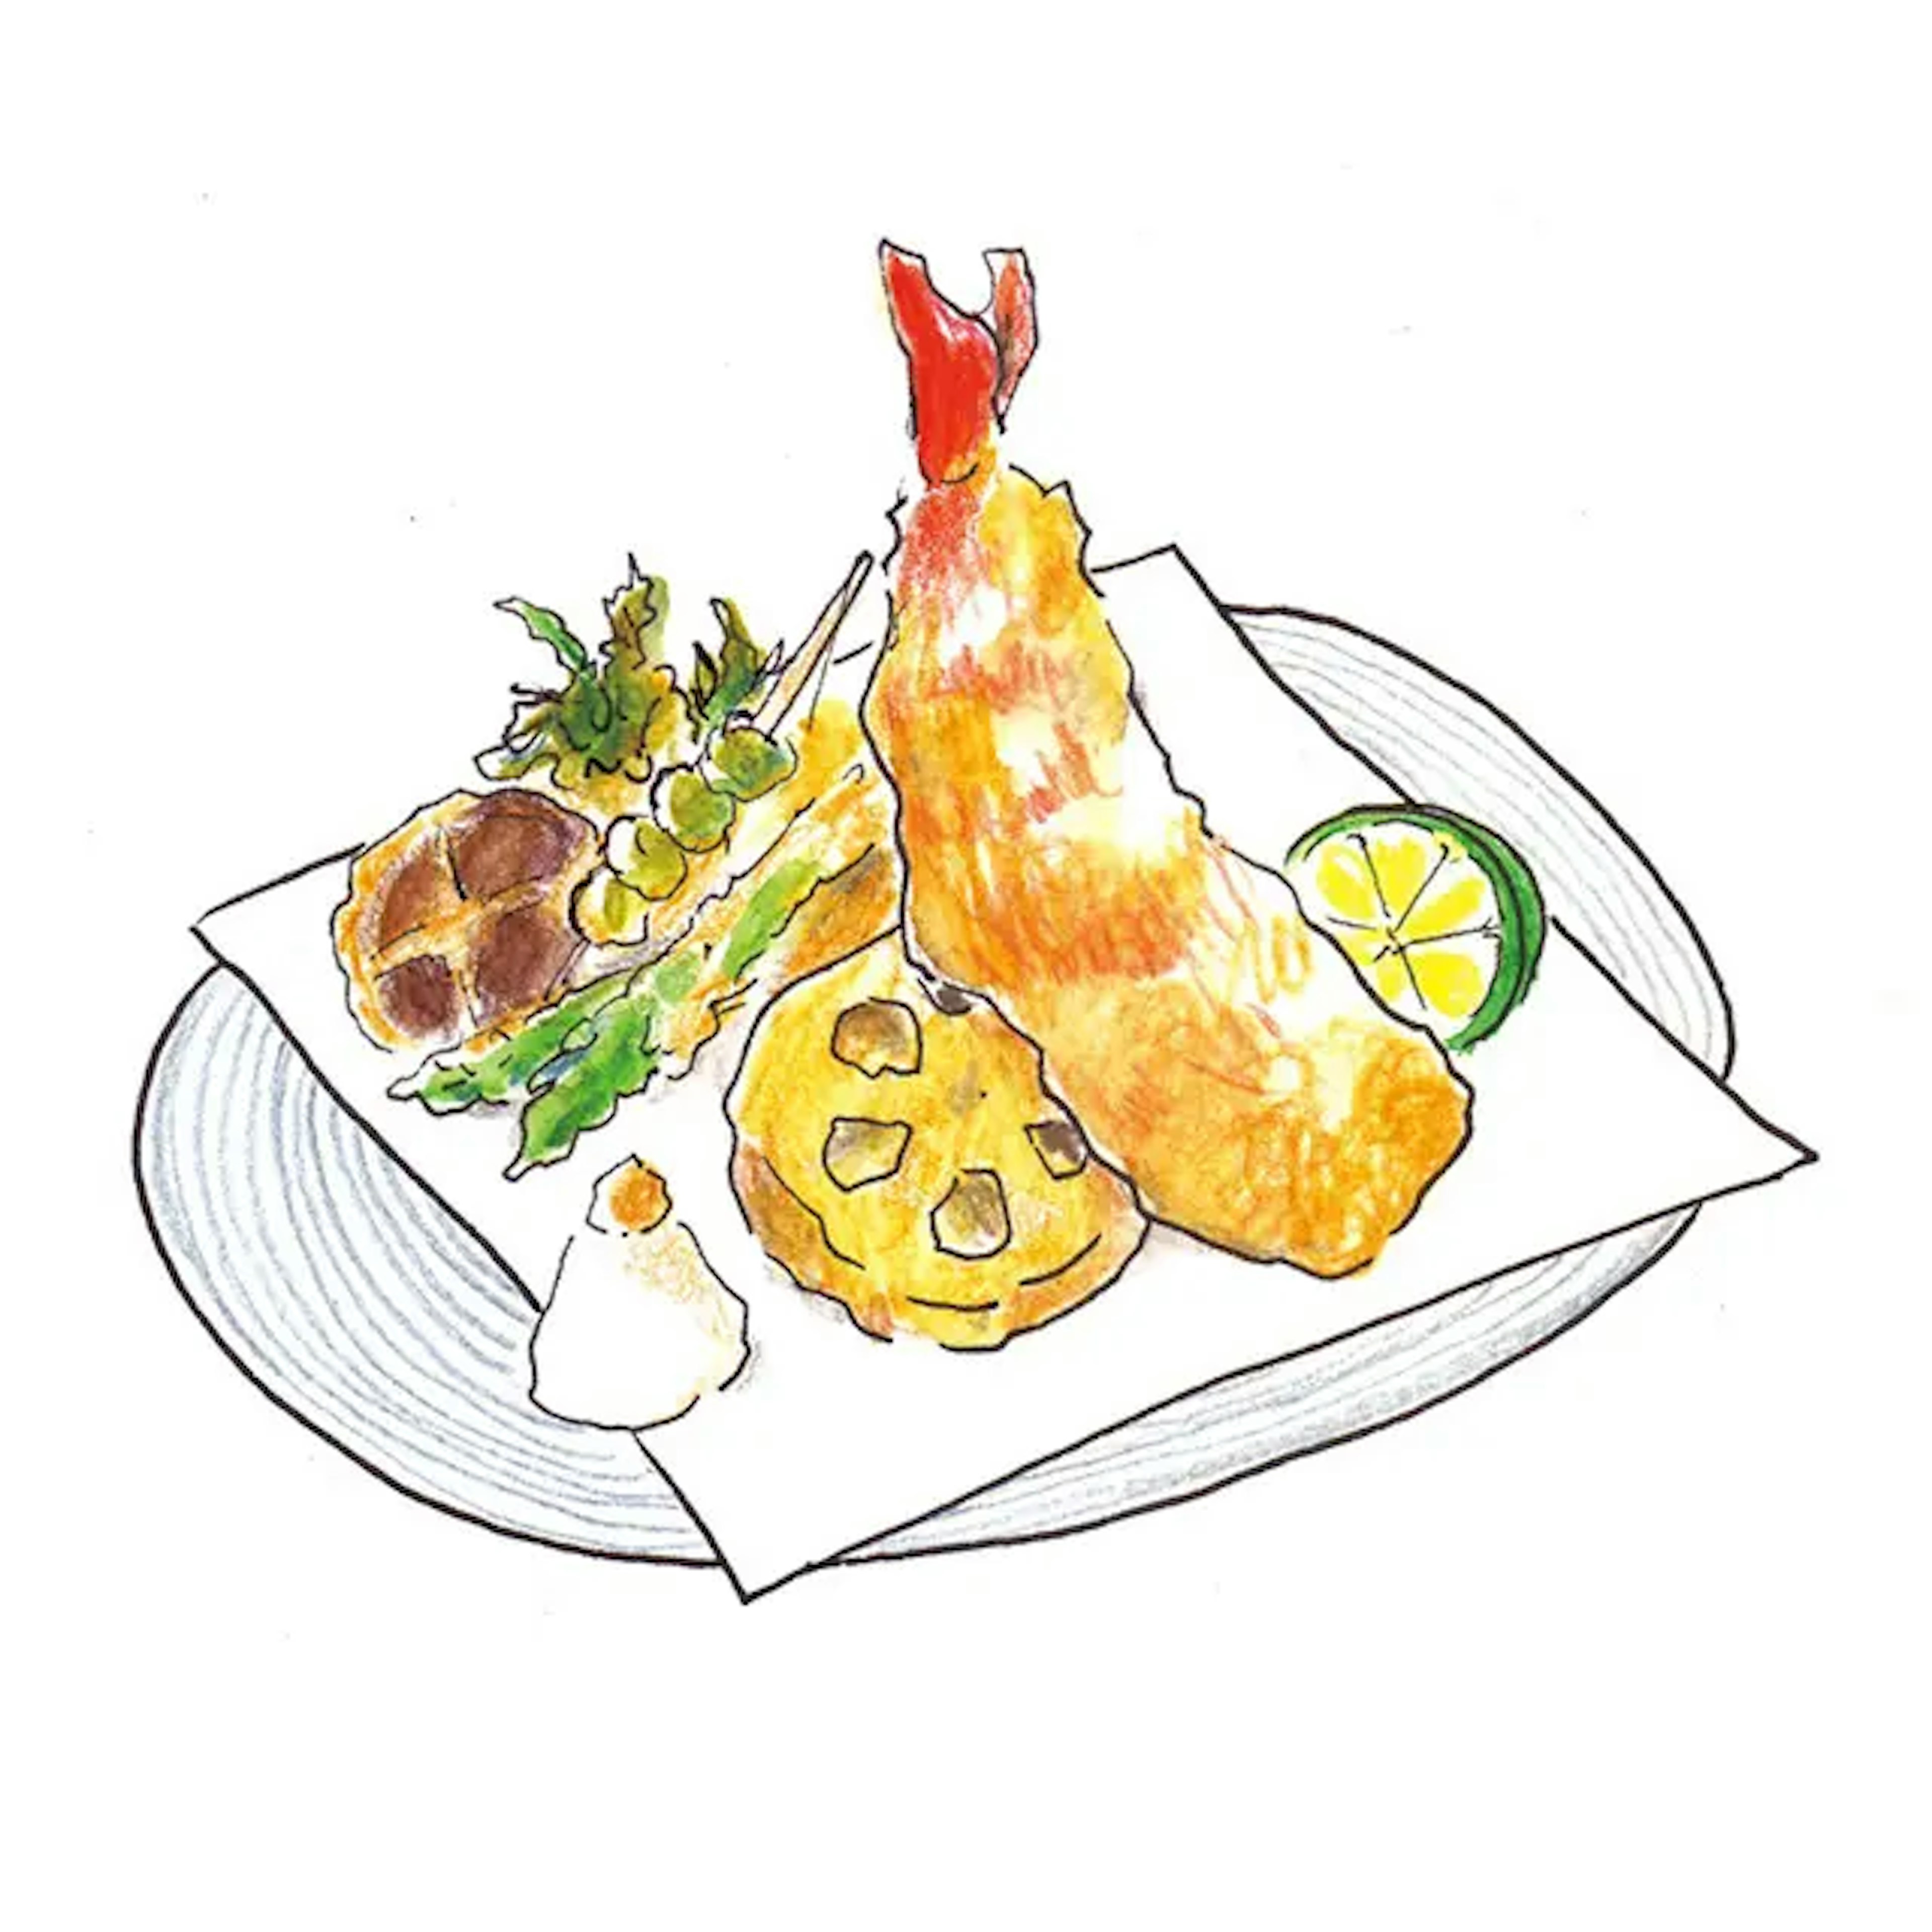 イラスト：天ぷら。エビ、レンコン、いんげん、しいたけ、山菜。かぼすと大根おろしが添えられている。